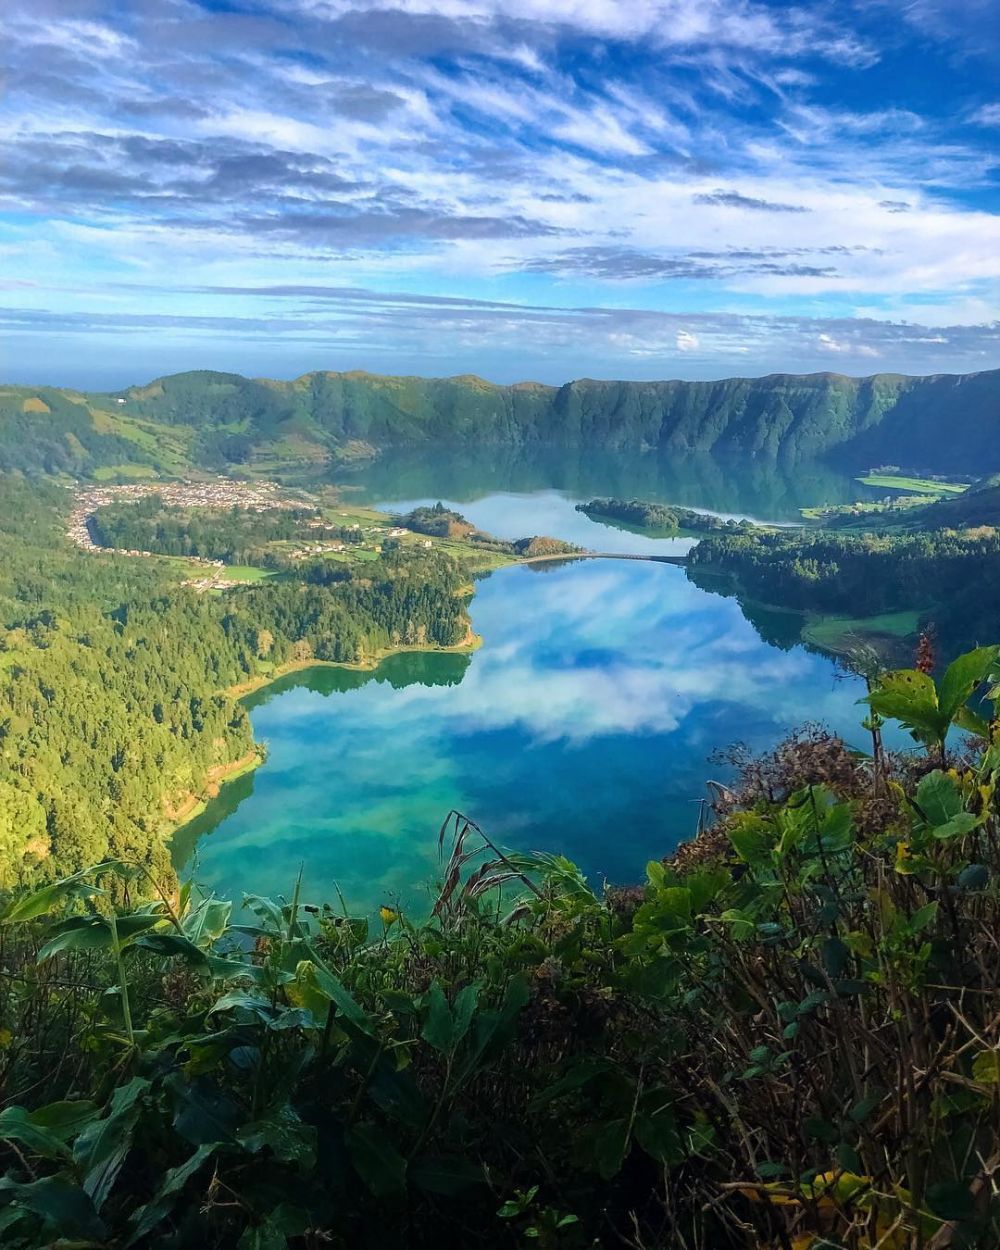 6 Spot Wisata Asyik di Kepulauan Azores, Portugal yang Populer Abis